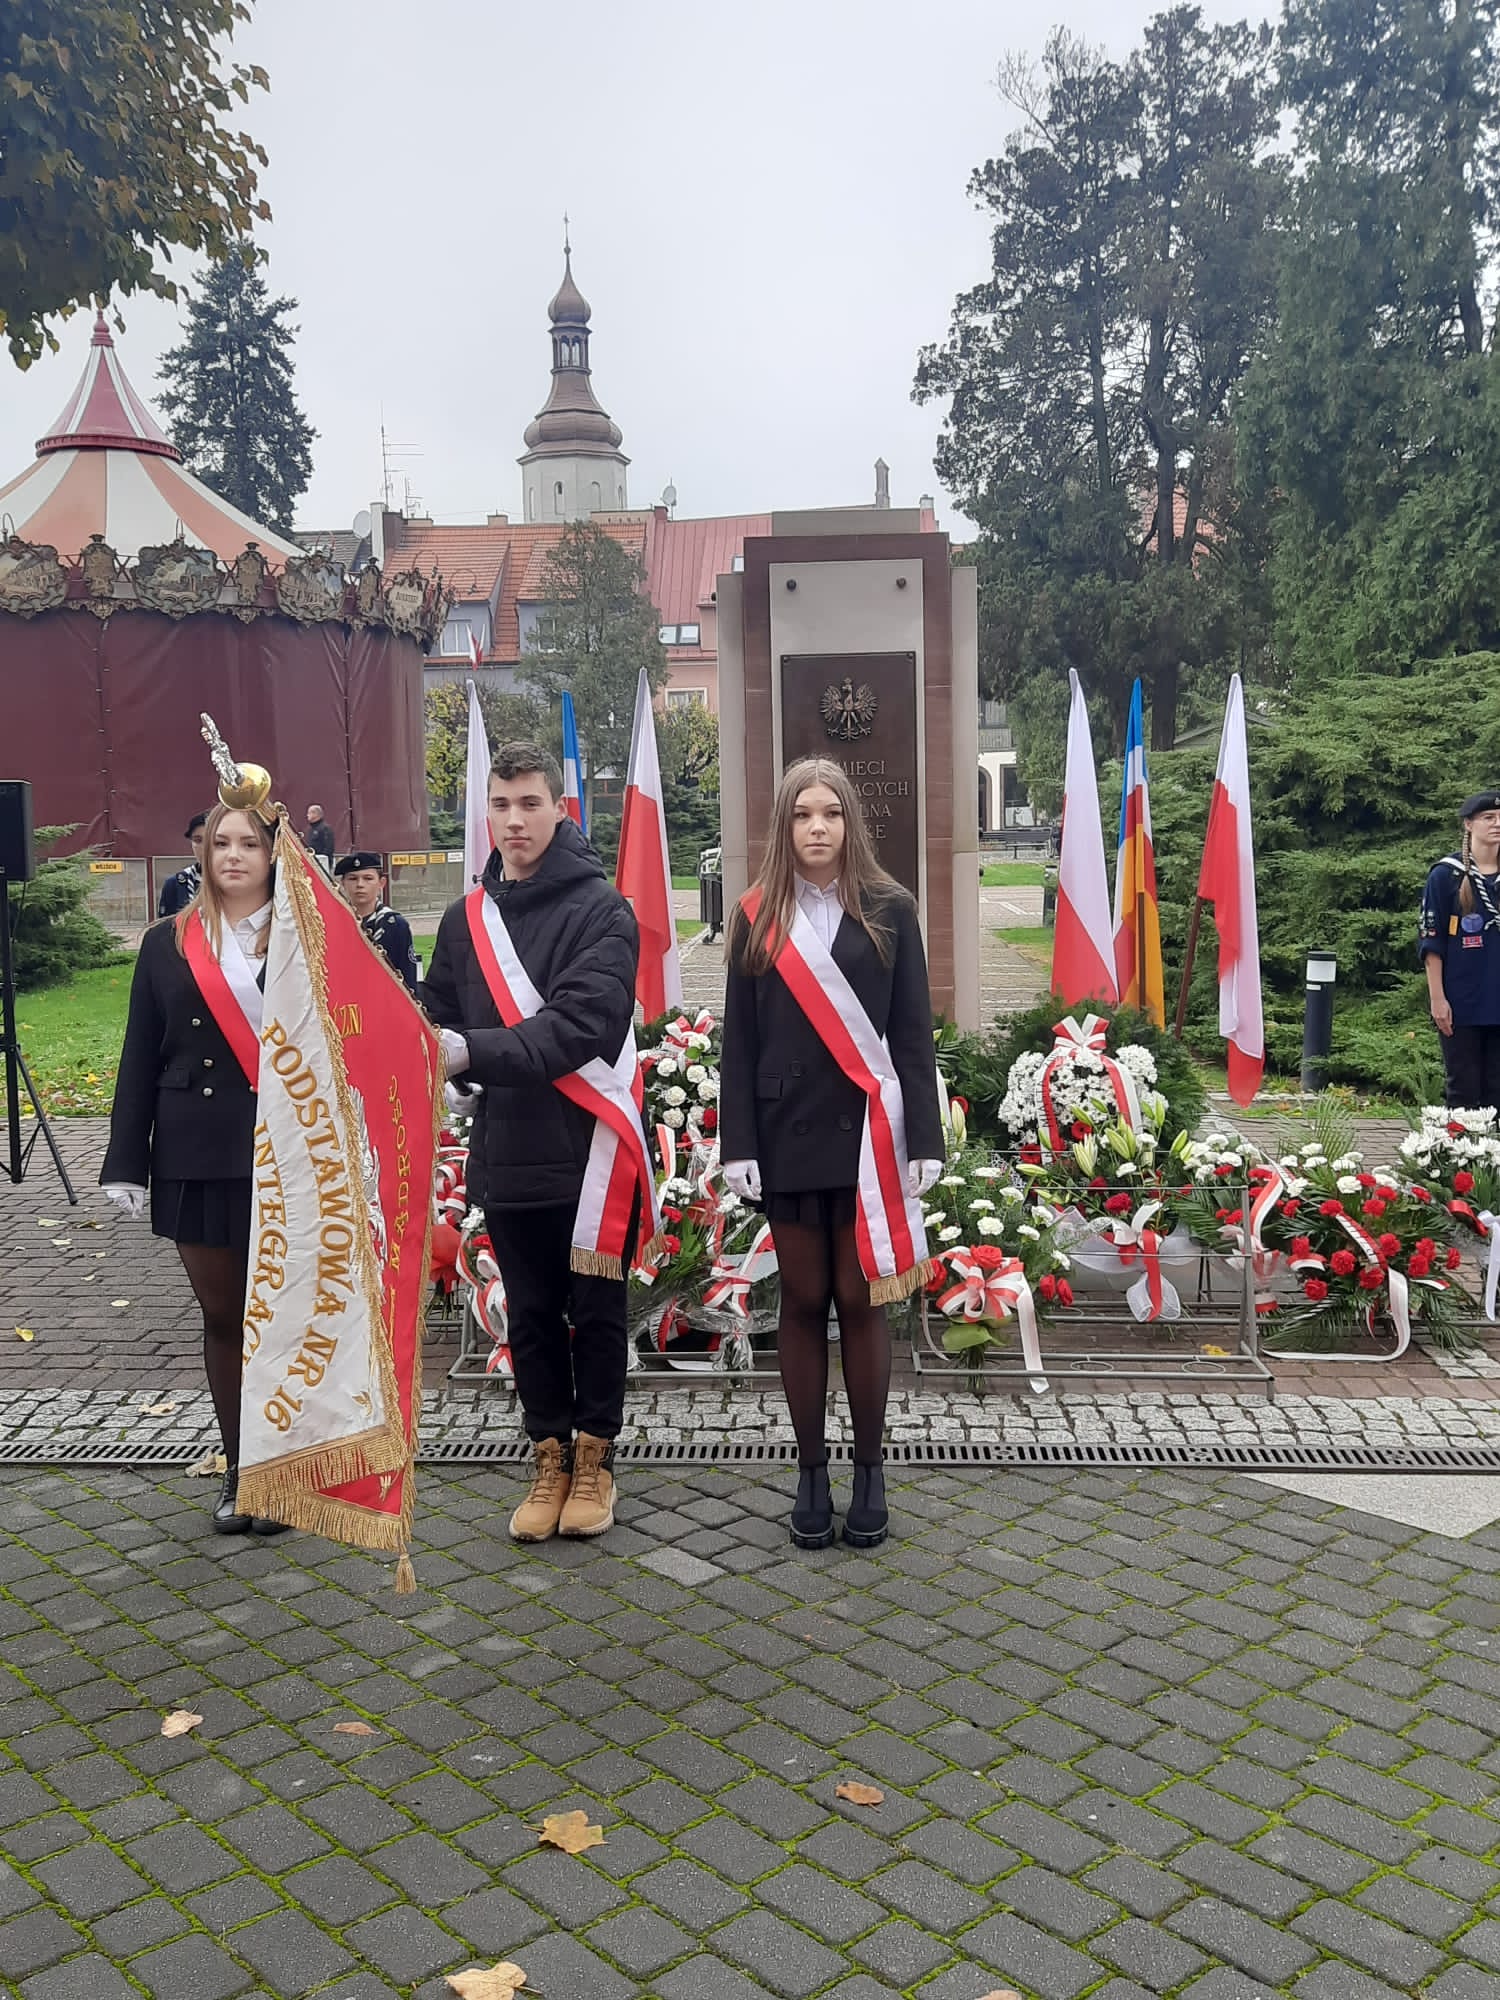 Na zdjęciu widać poczet sztandarowy na tle pomnika Pamięci Walczących o Wolną Polskę. Chorąży trzyma pochylony sztandar szkoły.